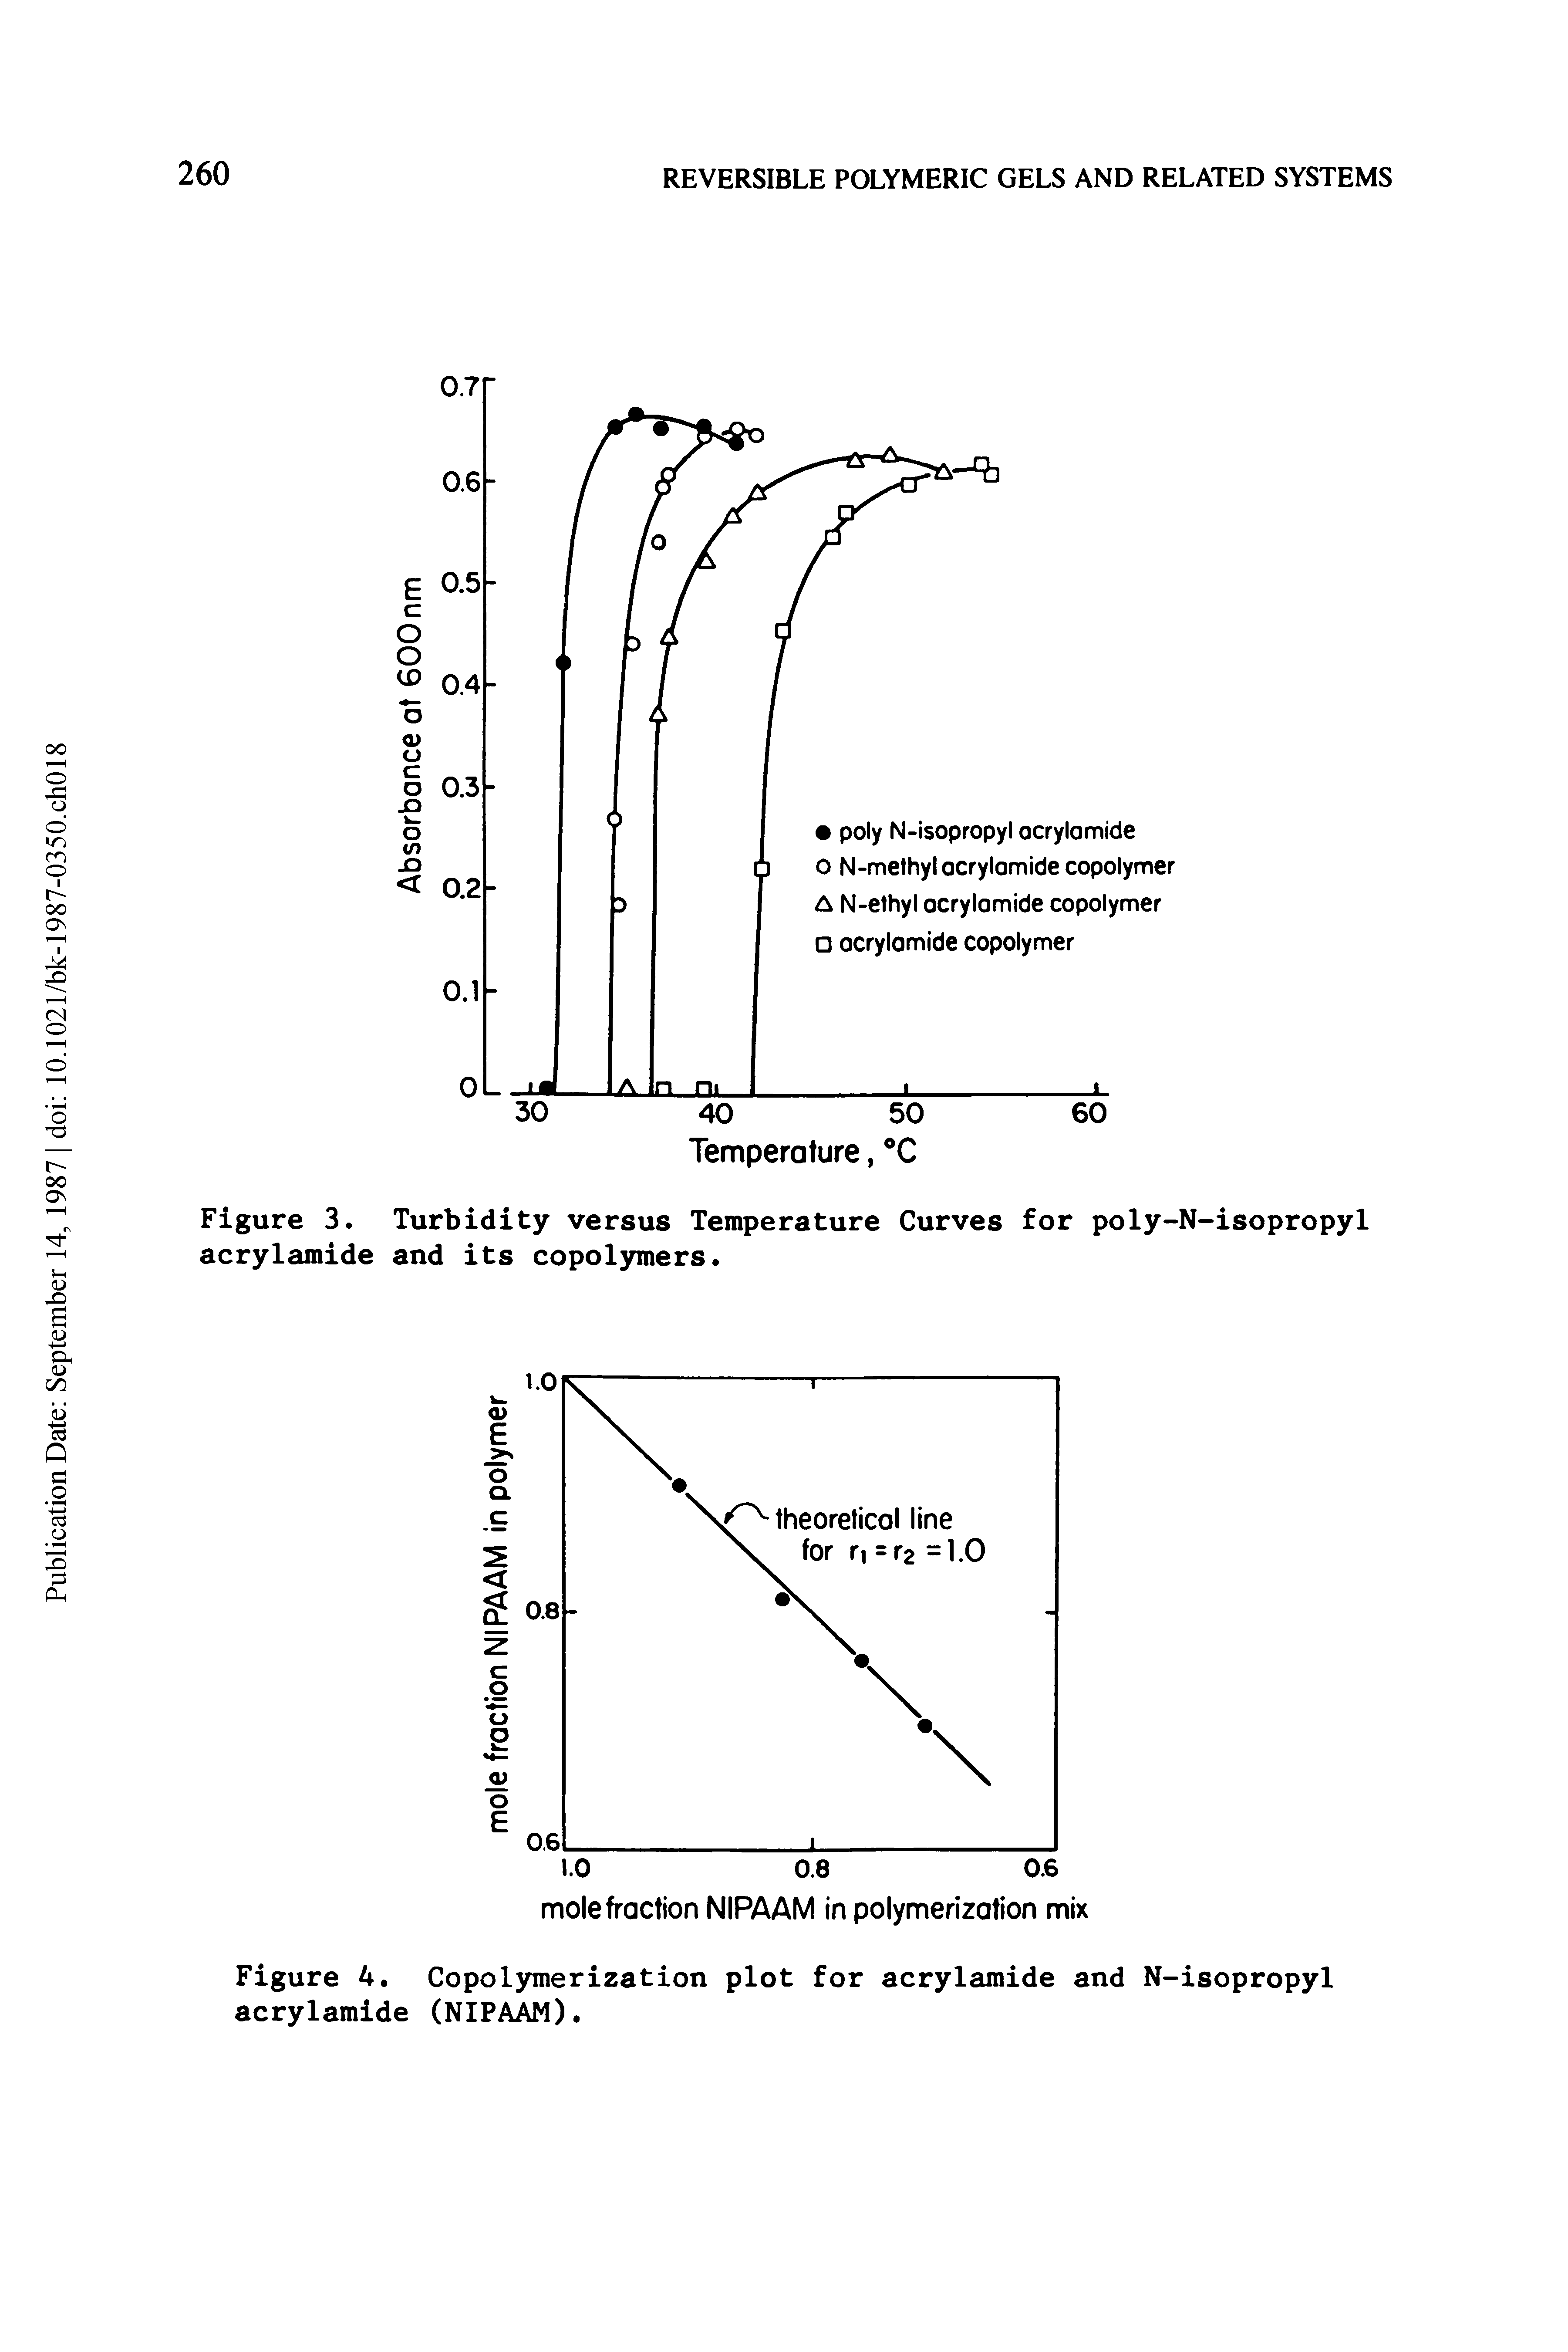 Figure 4. Copolymerization plot for acrylamide and N-isopropyl acrylamide (NIPAAM).